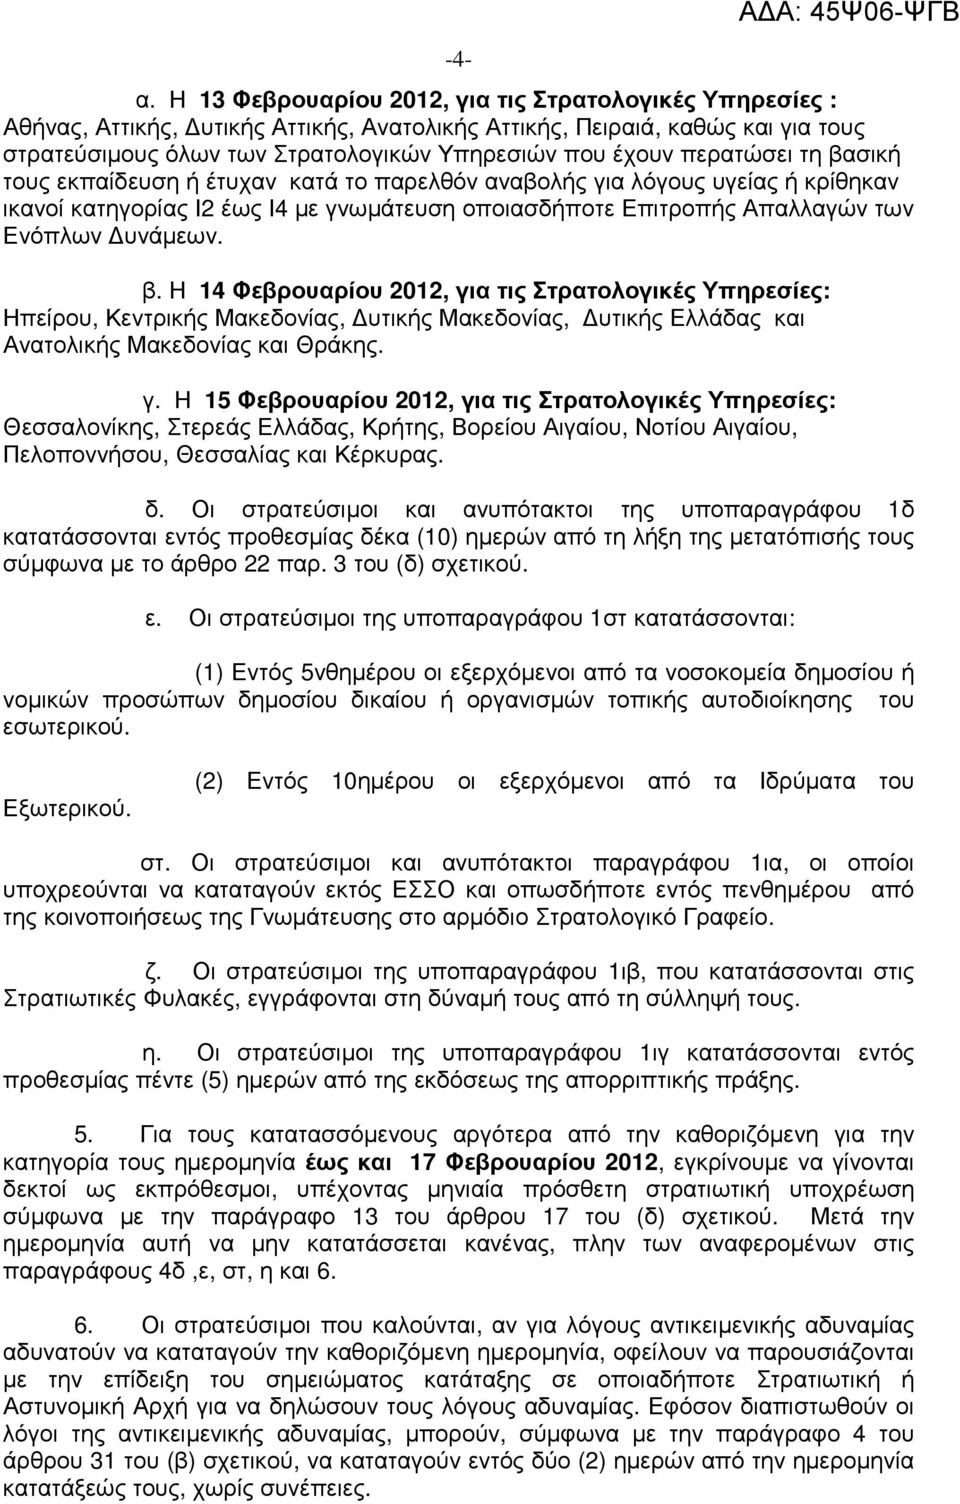 περατώσει τη βασική τους εκπαίδευση ή έτυχαν κατά το παρελθόν αναβολής για λόγους υγείας ή κρίθηκαν ικανοί κατηγορίας Ι2 έως Ι4 µε γνωµάτευση οποιασδήποτε Επιτροπής Απαλλαγών των Ενόπλων υνάµεων. β. Η 14 Φεβρουαρίου 2012, για τις Στρατολογικές Υπηρεσίες: Ηπείρου, Κεντρικής Μακεδονίας, υτικής Μακεδονίας, υτικής Ελλάδας και Ανατολικής Μακεδονίας και Θράκης.